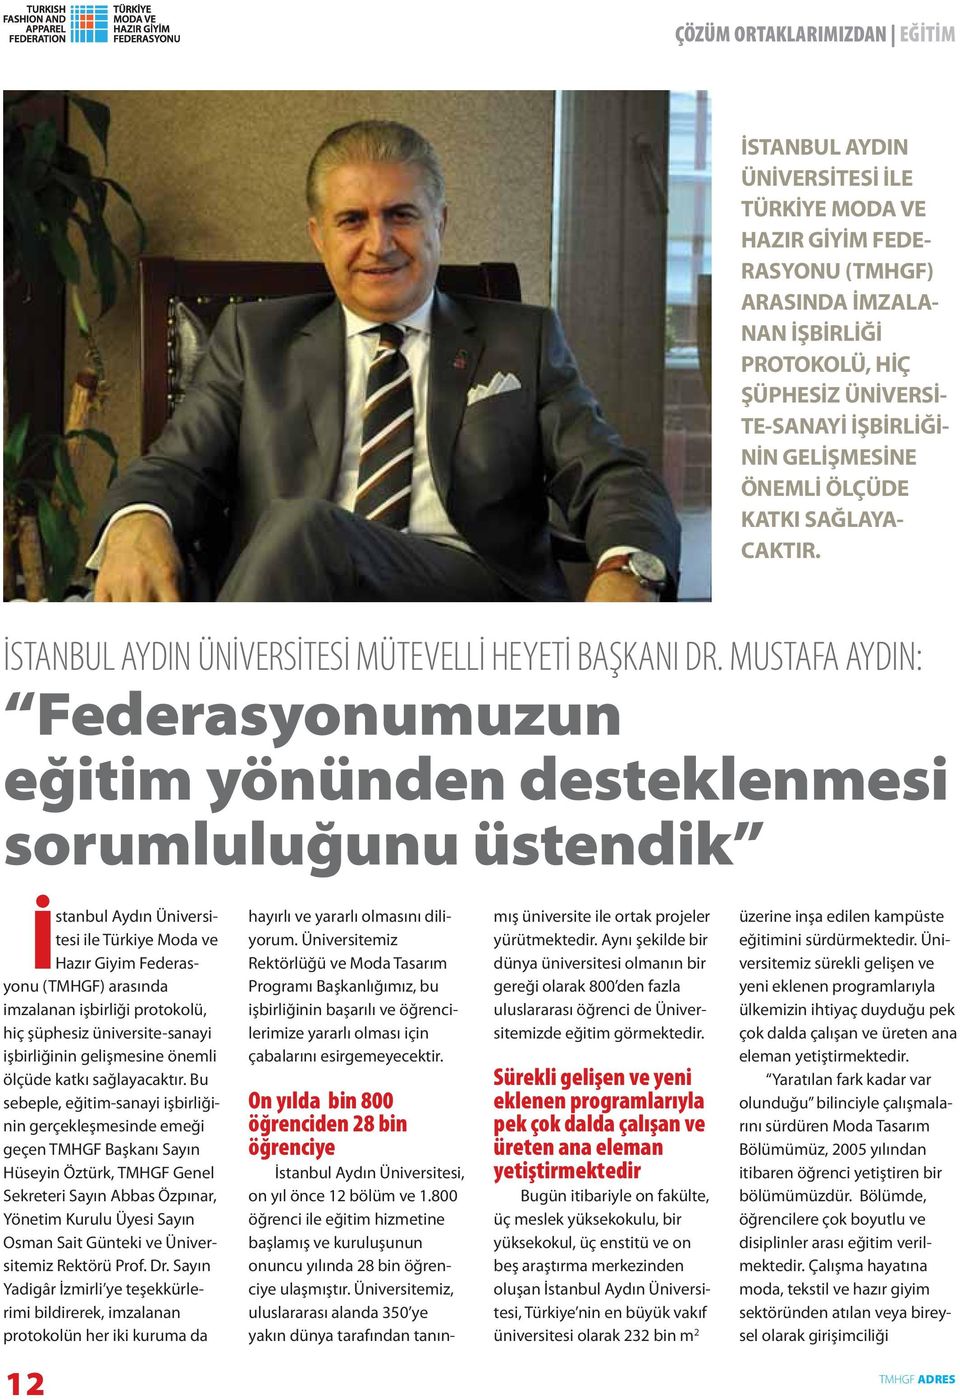 MUSTAFA AYDIN: Federasyonumuzun eğitim yönünden desteklenmesi sorumluluğunu üstendik İstanbul Aydın Üniversitesi ile Türkiye Moda ve Hazır Giyim Federasyonu (TMHGF) arasında imzalanan işbirliği